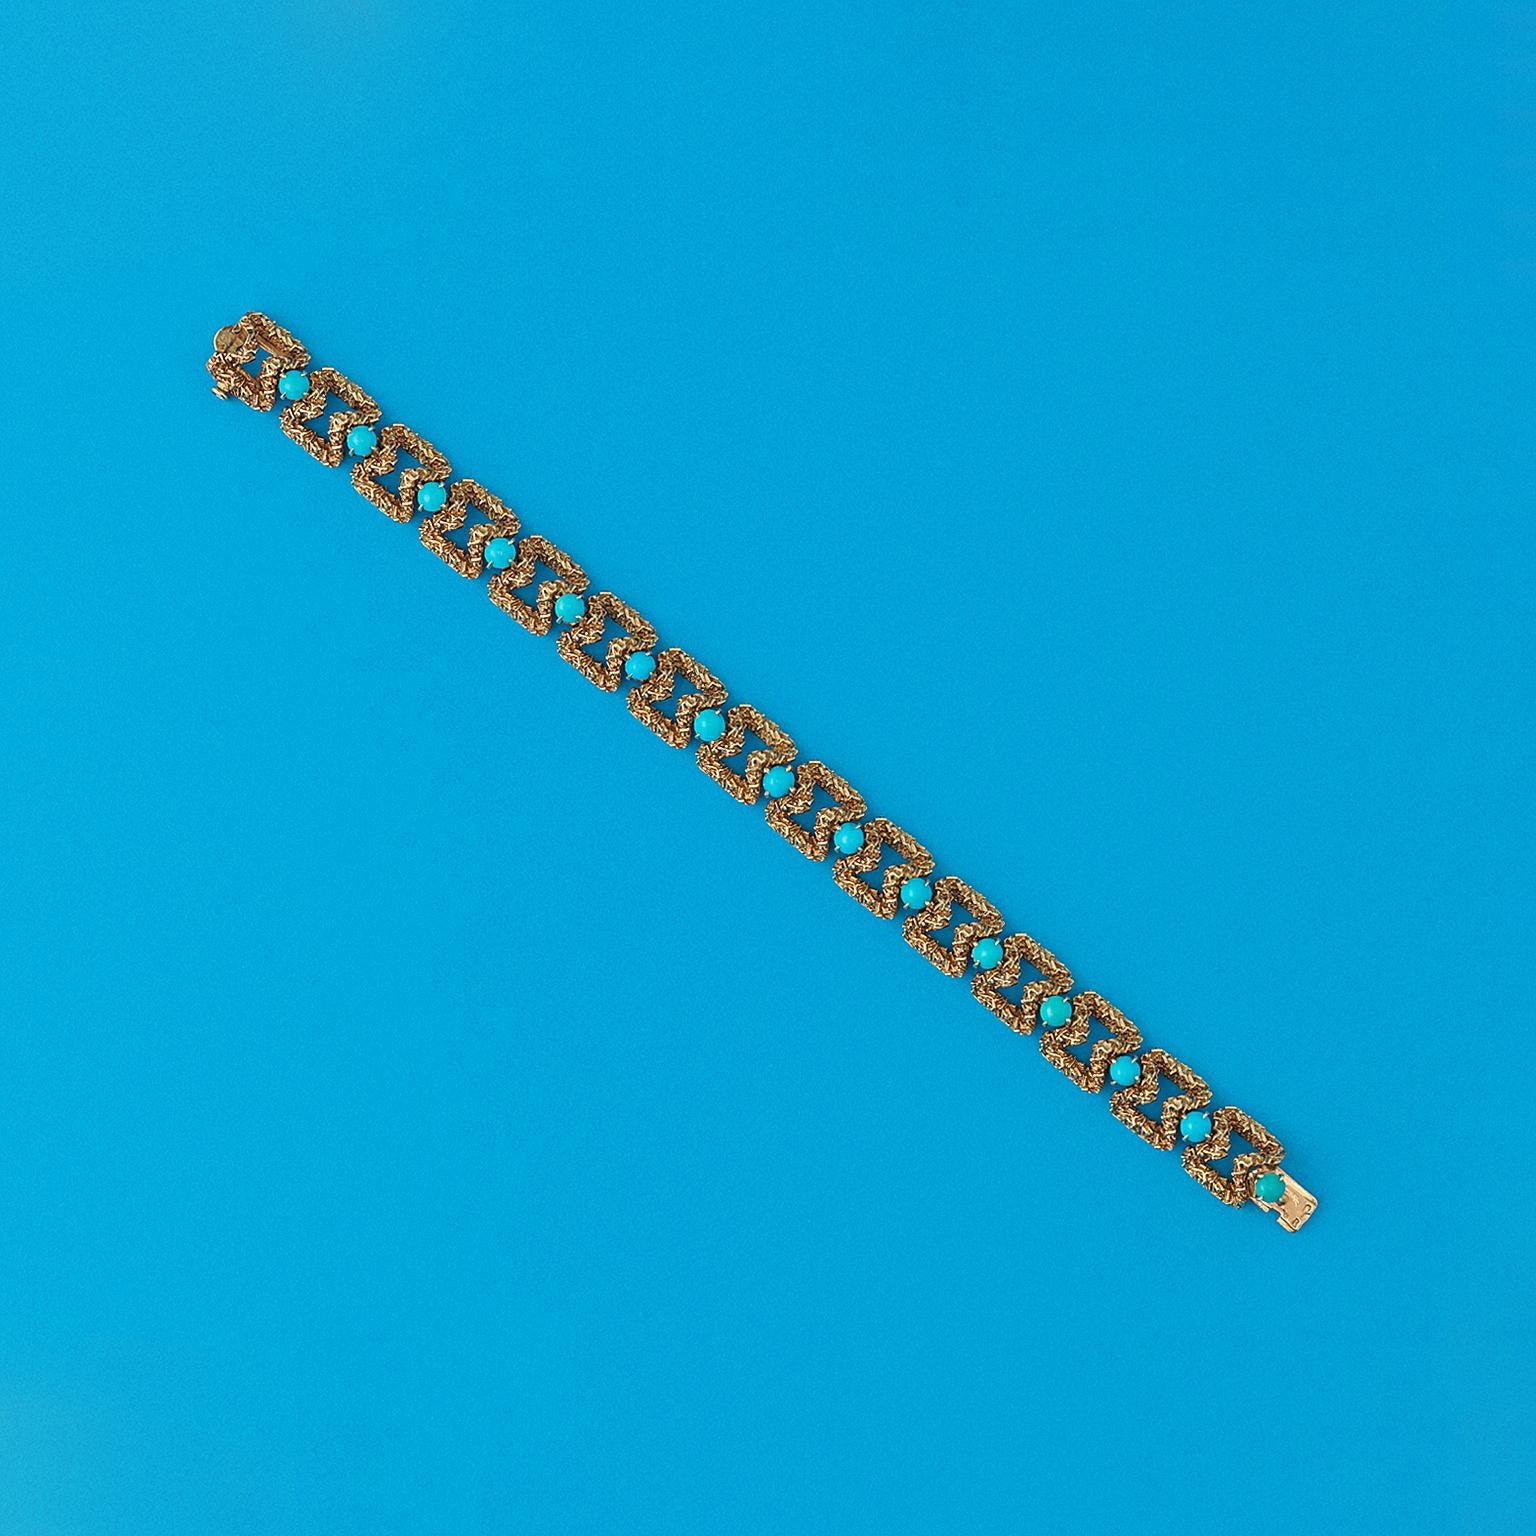 Un bracelet en or jaune 18 carats avec des maillons en forme de sablier avec entre chaque deux maillons une turquoise taillée en cabochon dans une minuscule monture à quatre griffes, signé : Mauboussin Paris, vers 1960.

poids : 41,71 grammes